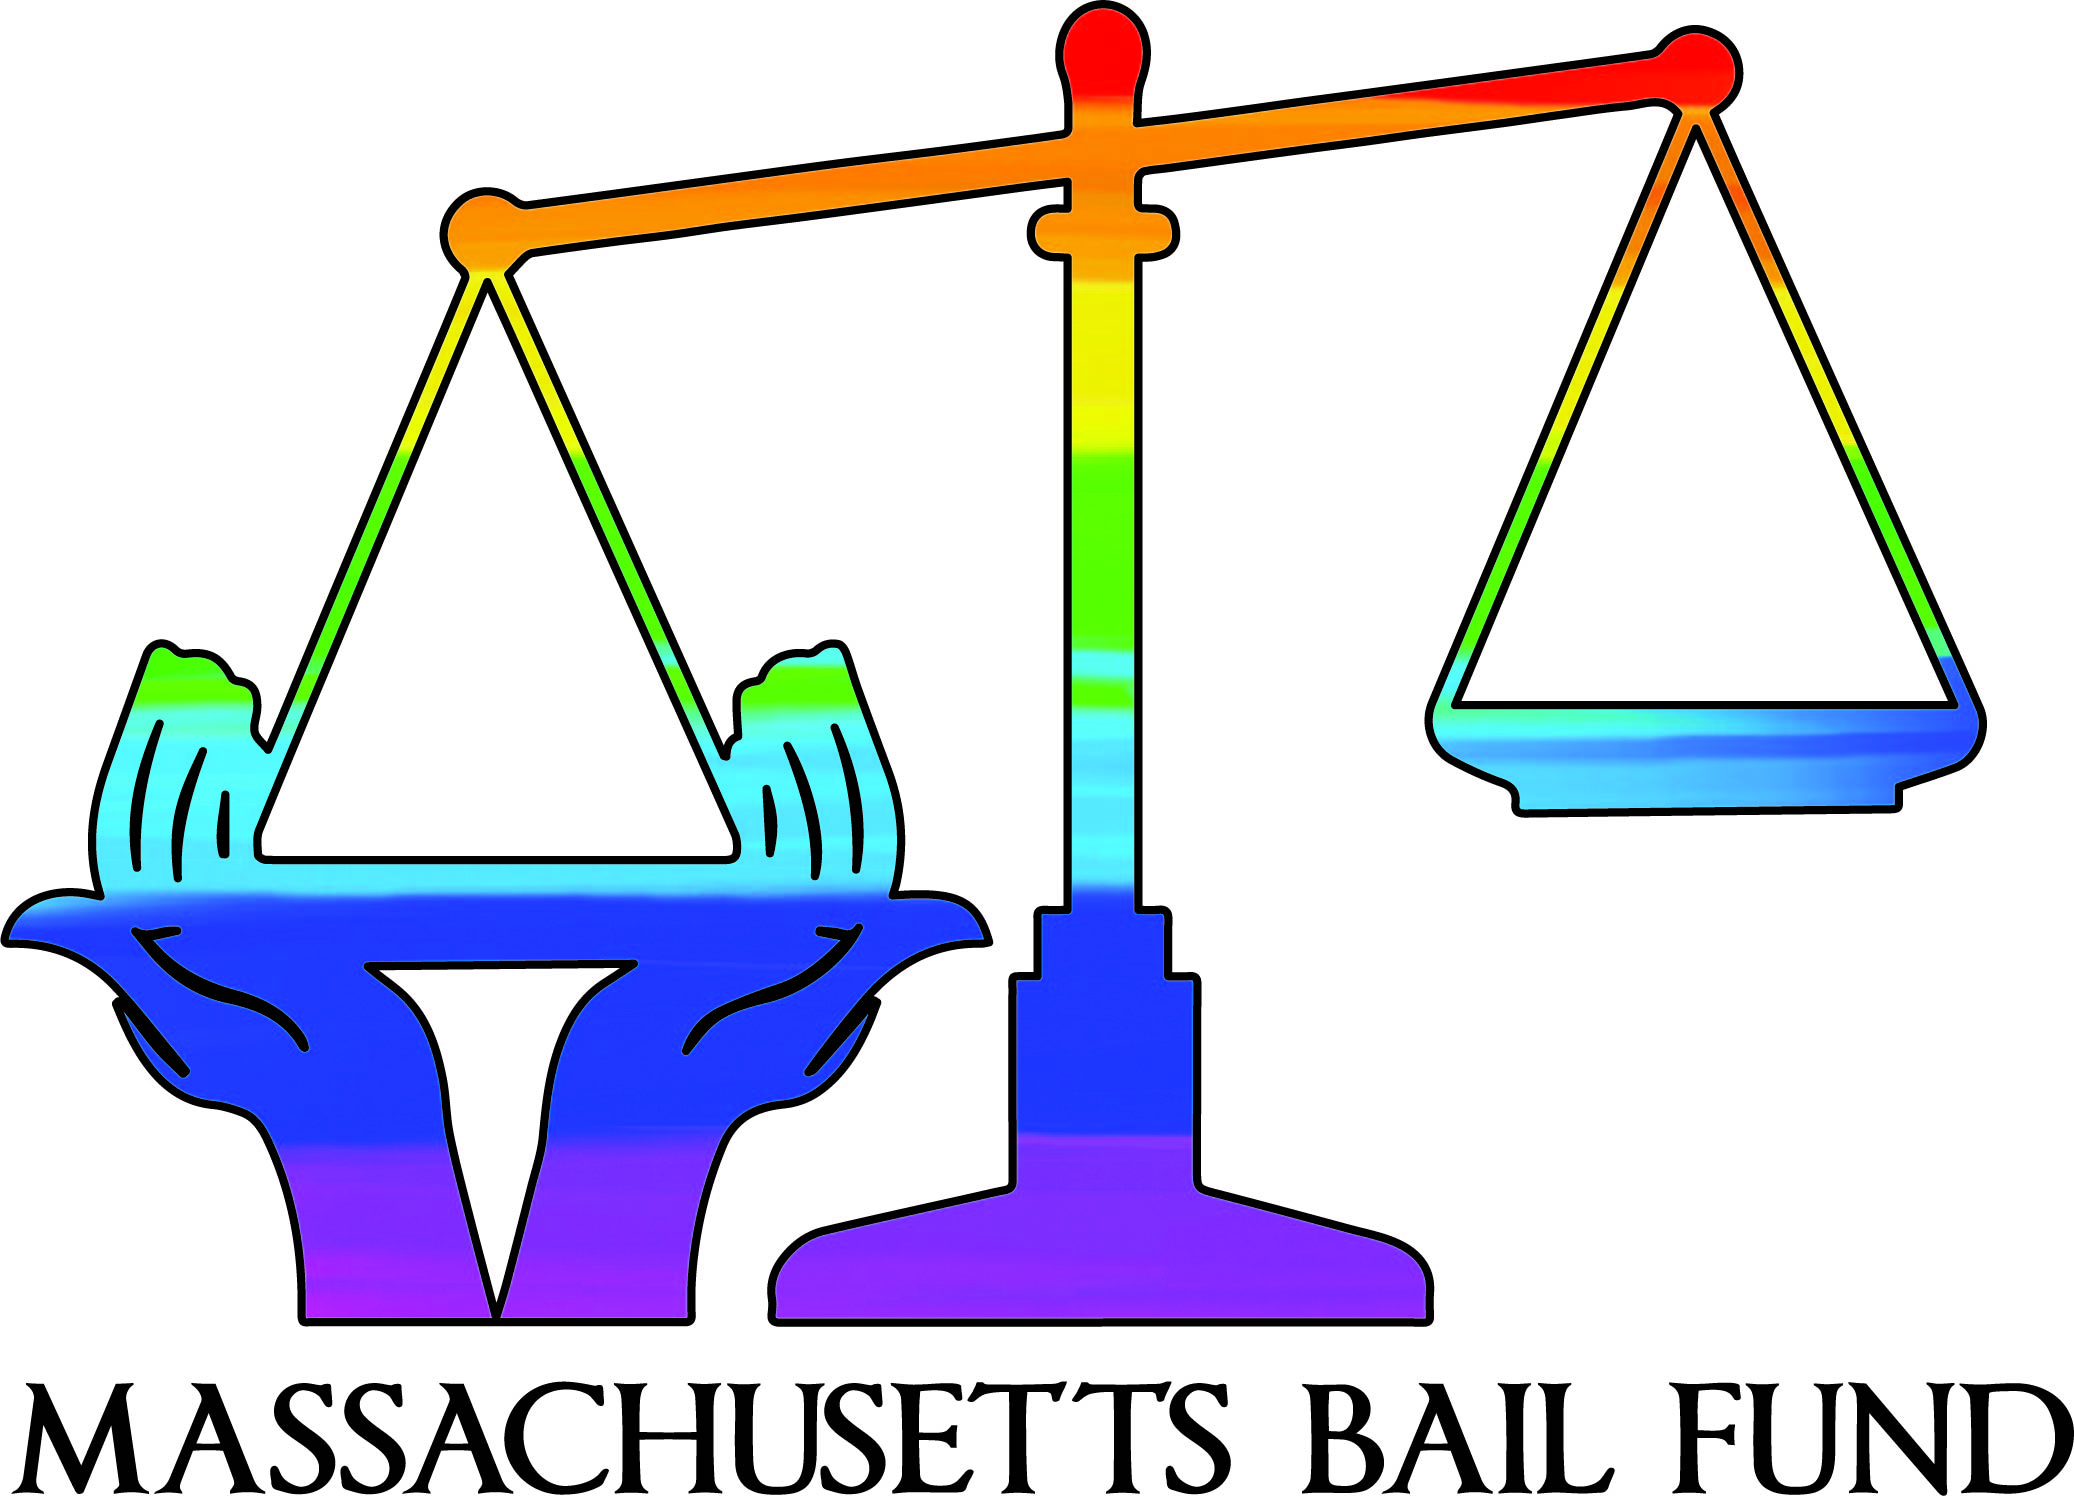 Massachusetts Bail Fund rainbow logo [Massachusetts Bail Fund]